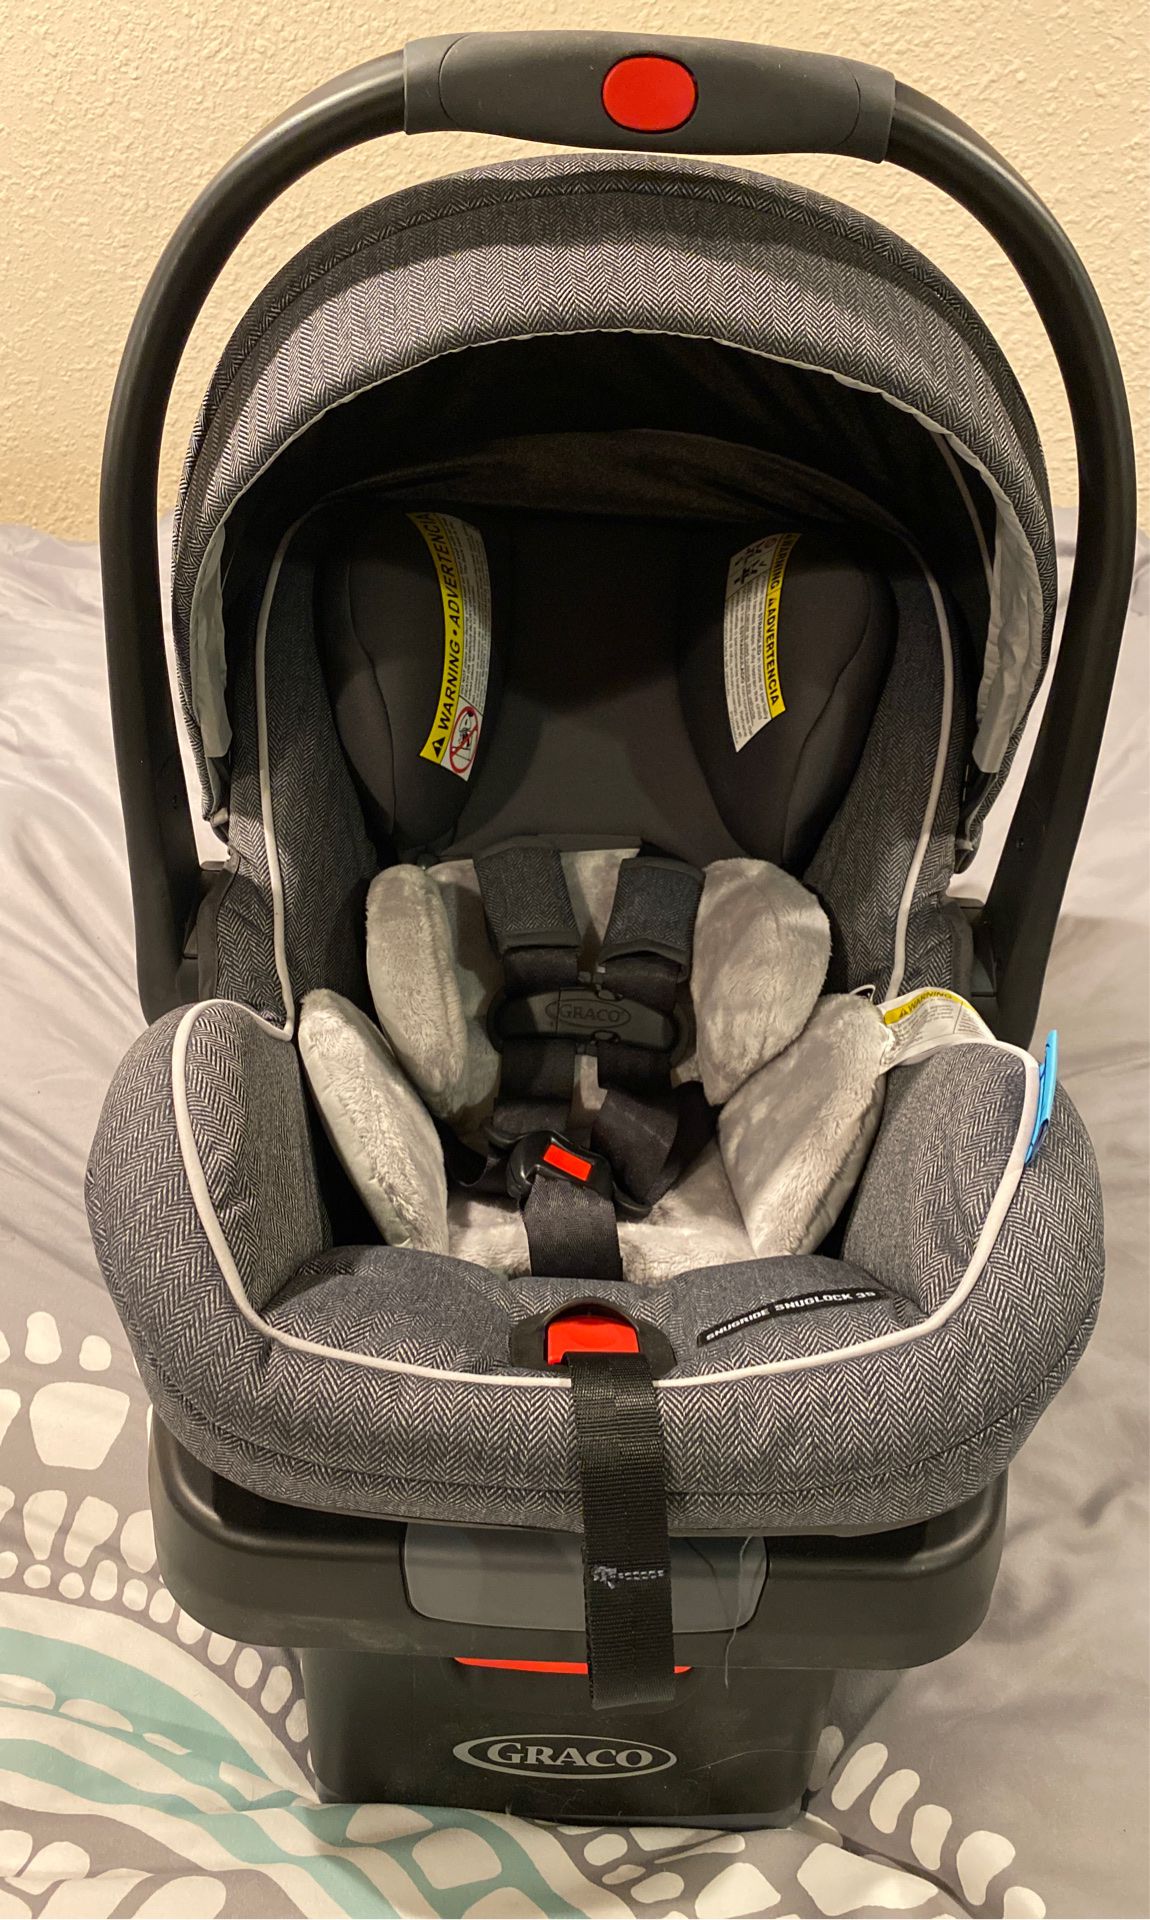 Graco snuglock 35 platinum infant car seat